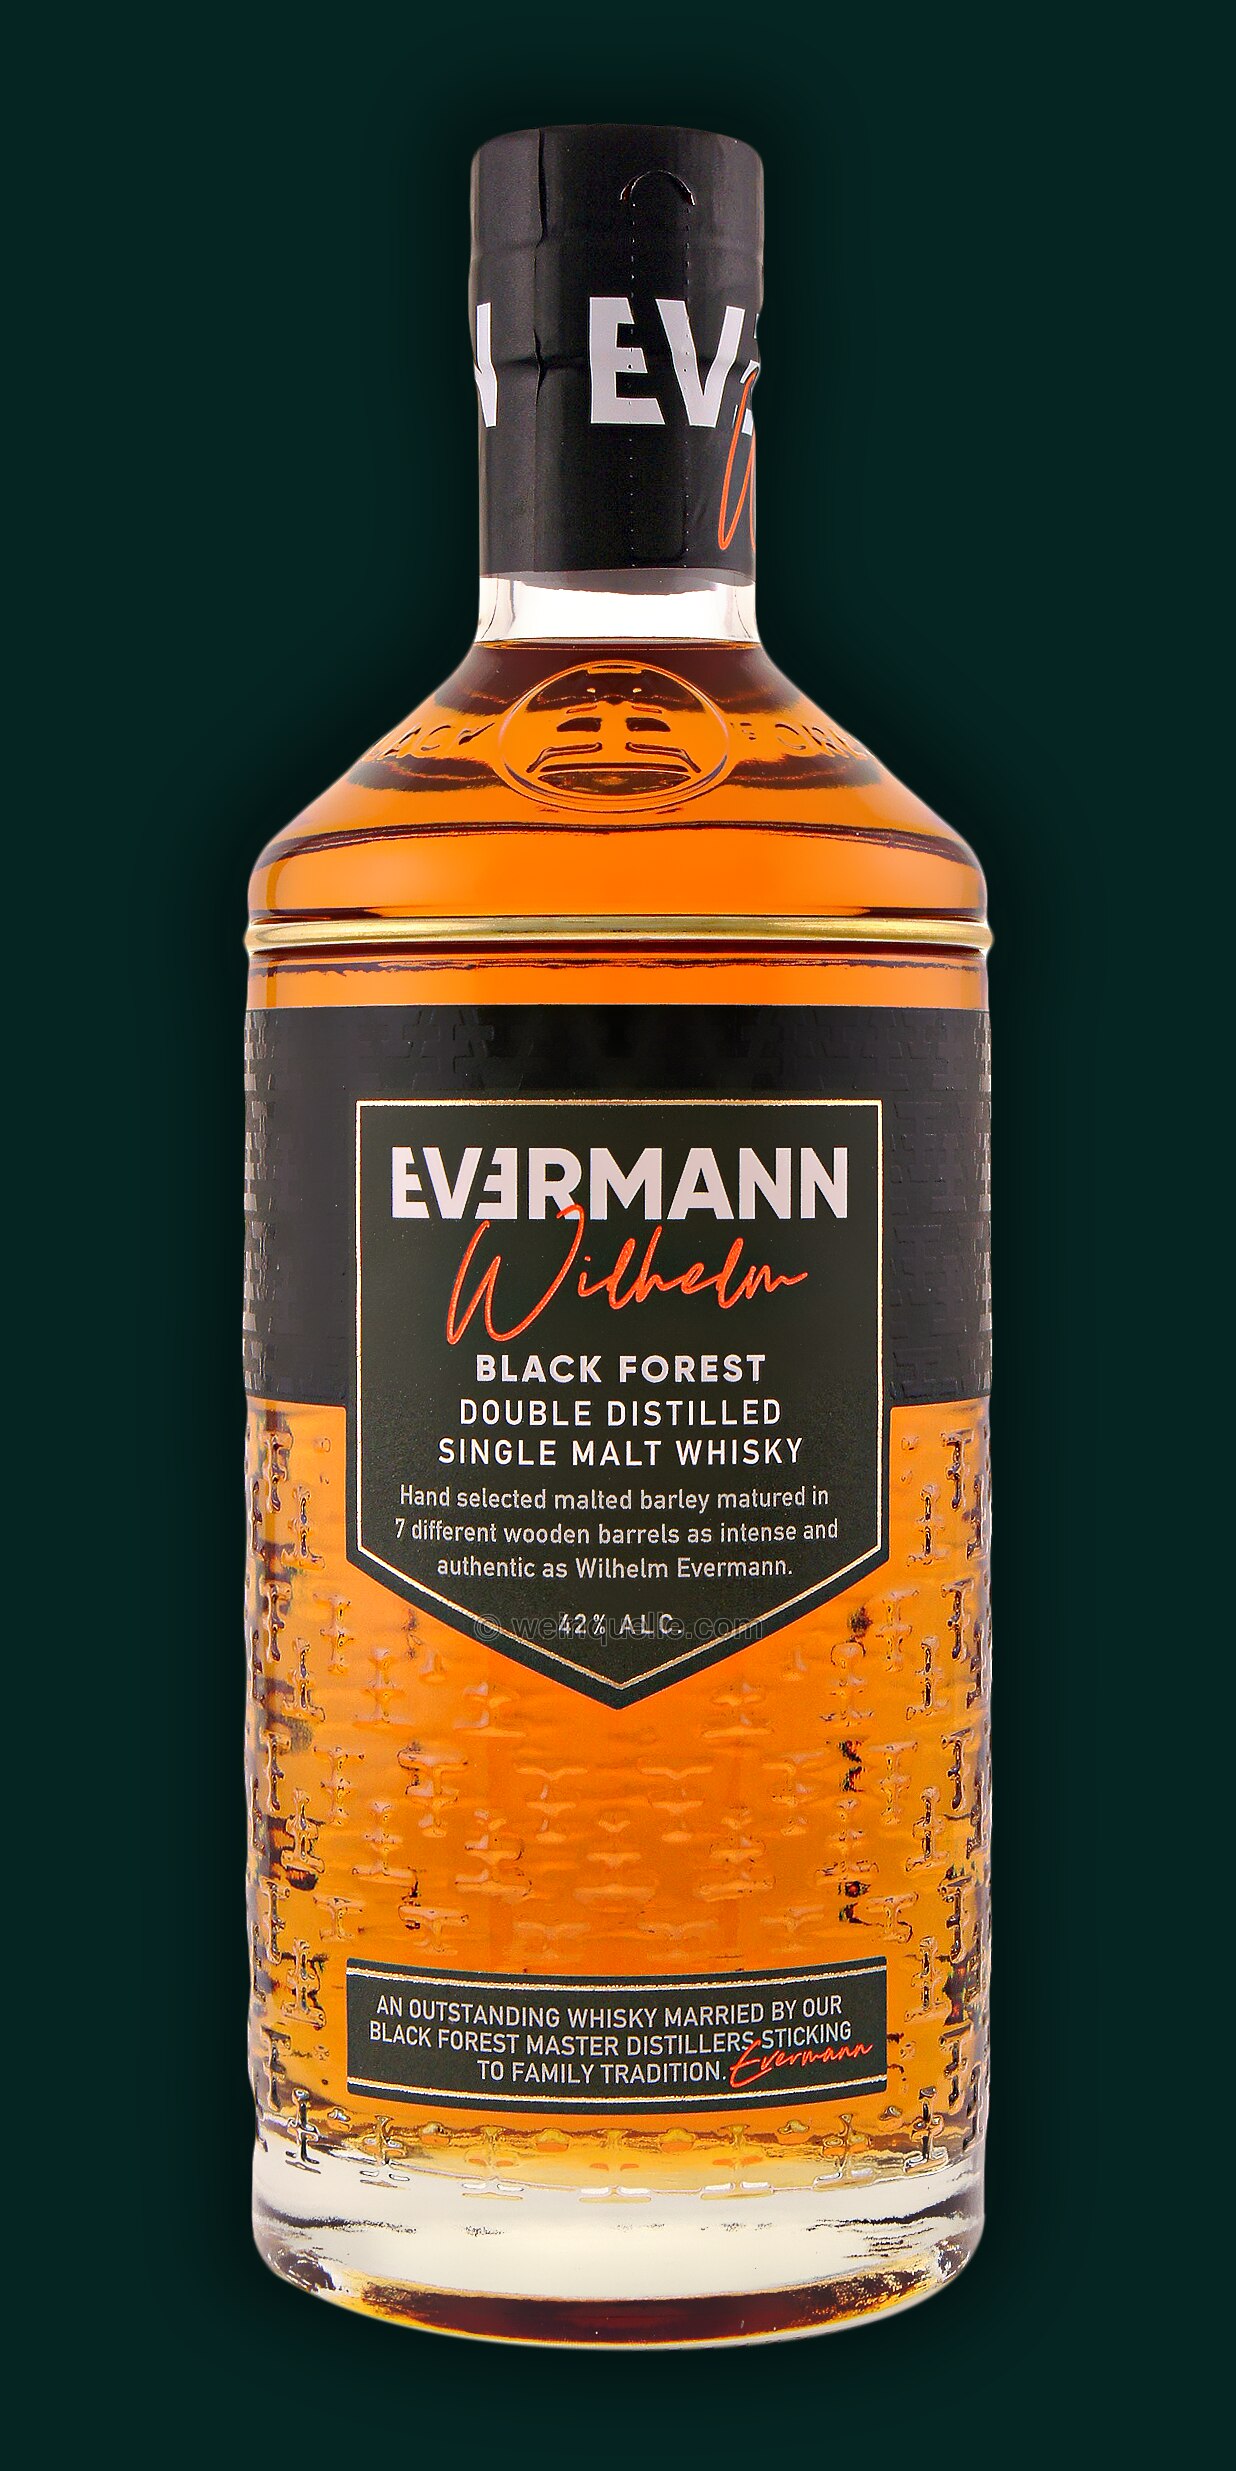 Whisky, € - Evermann Single Lühmann Wilhelm Weinquelle Malt 32,90